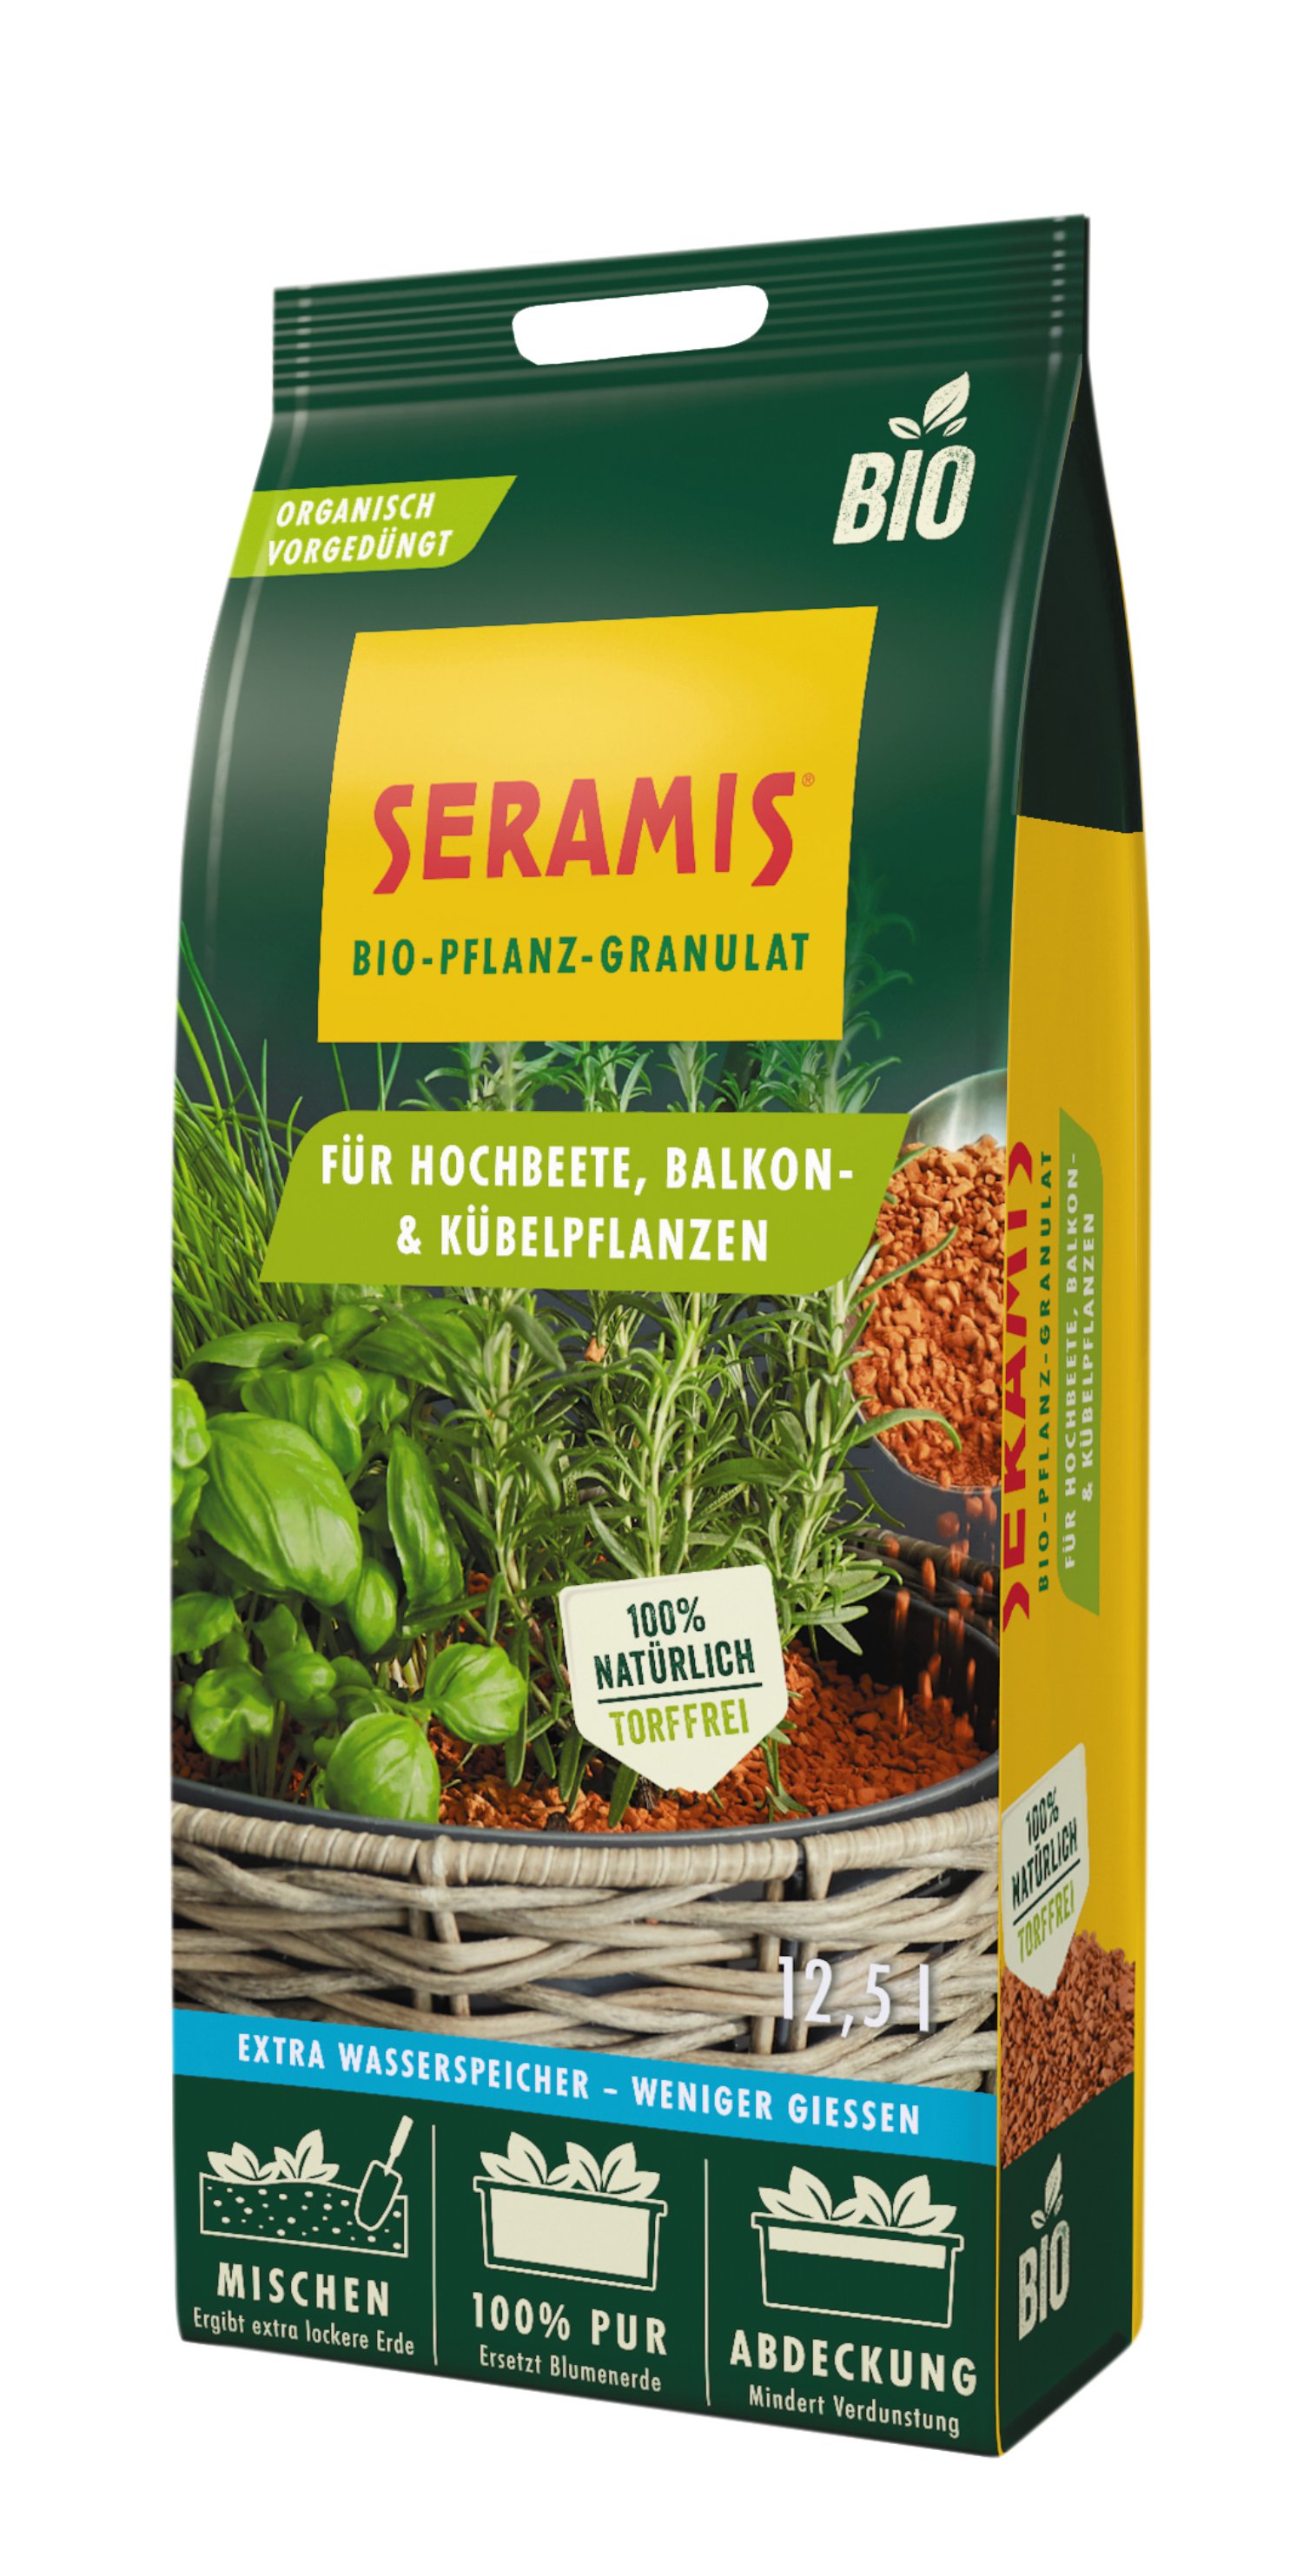 SERAMIS® Bio-Pflanz-Granulat für Hochbeete, Balkon- & Kübelpflanzen 12,5 l